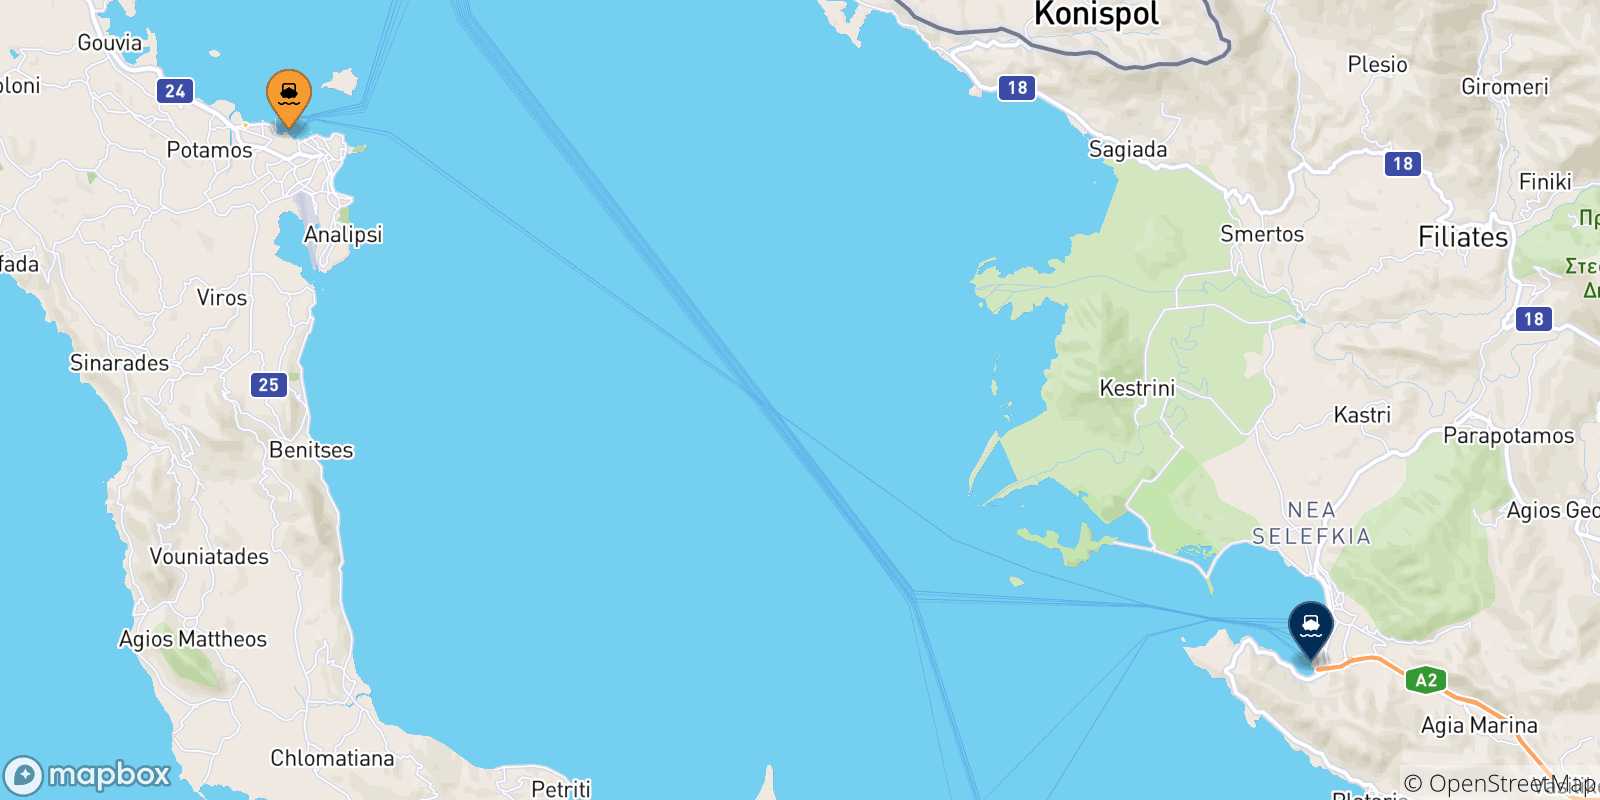 Mappa delle possibili rotte tra le Isole Ionie e Igoumenitsa